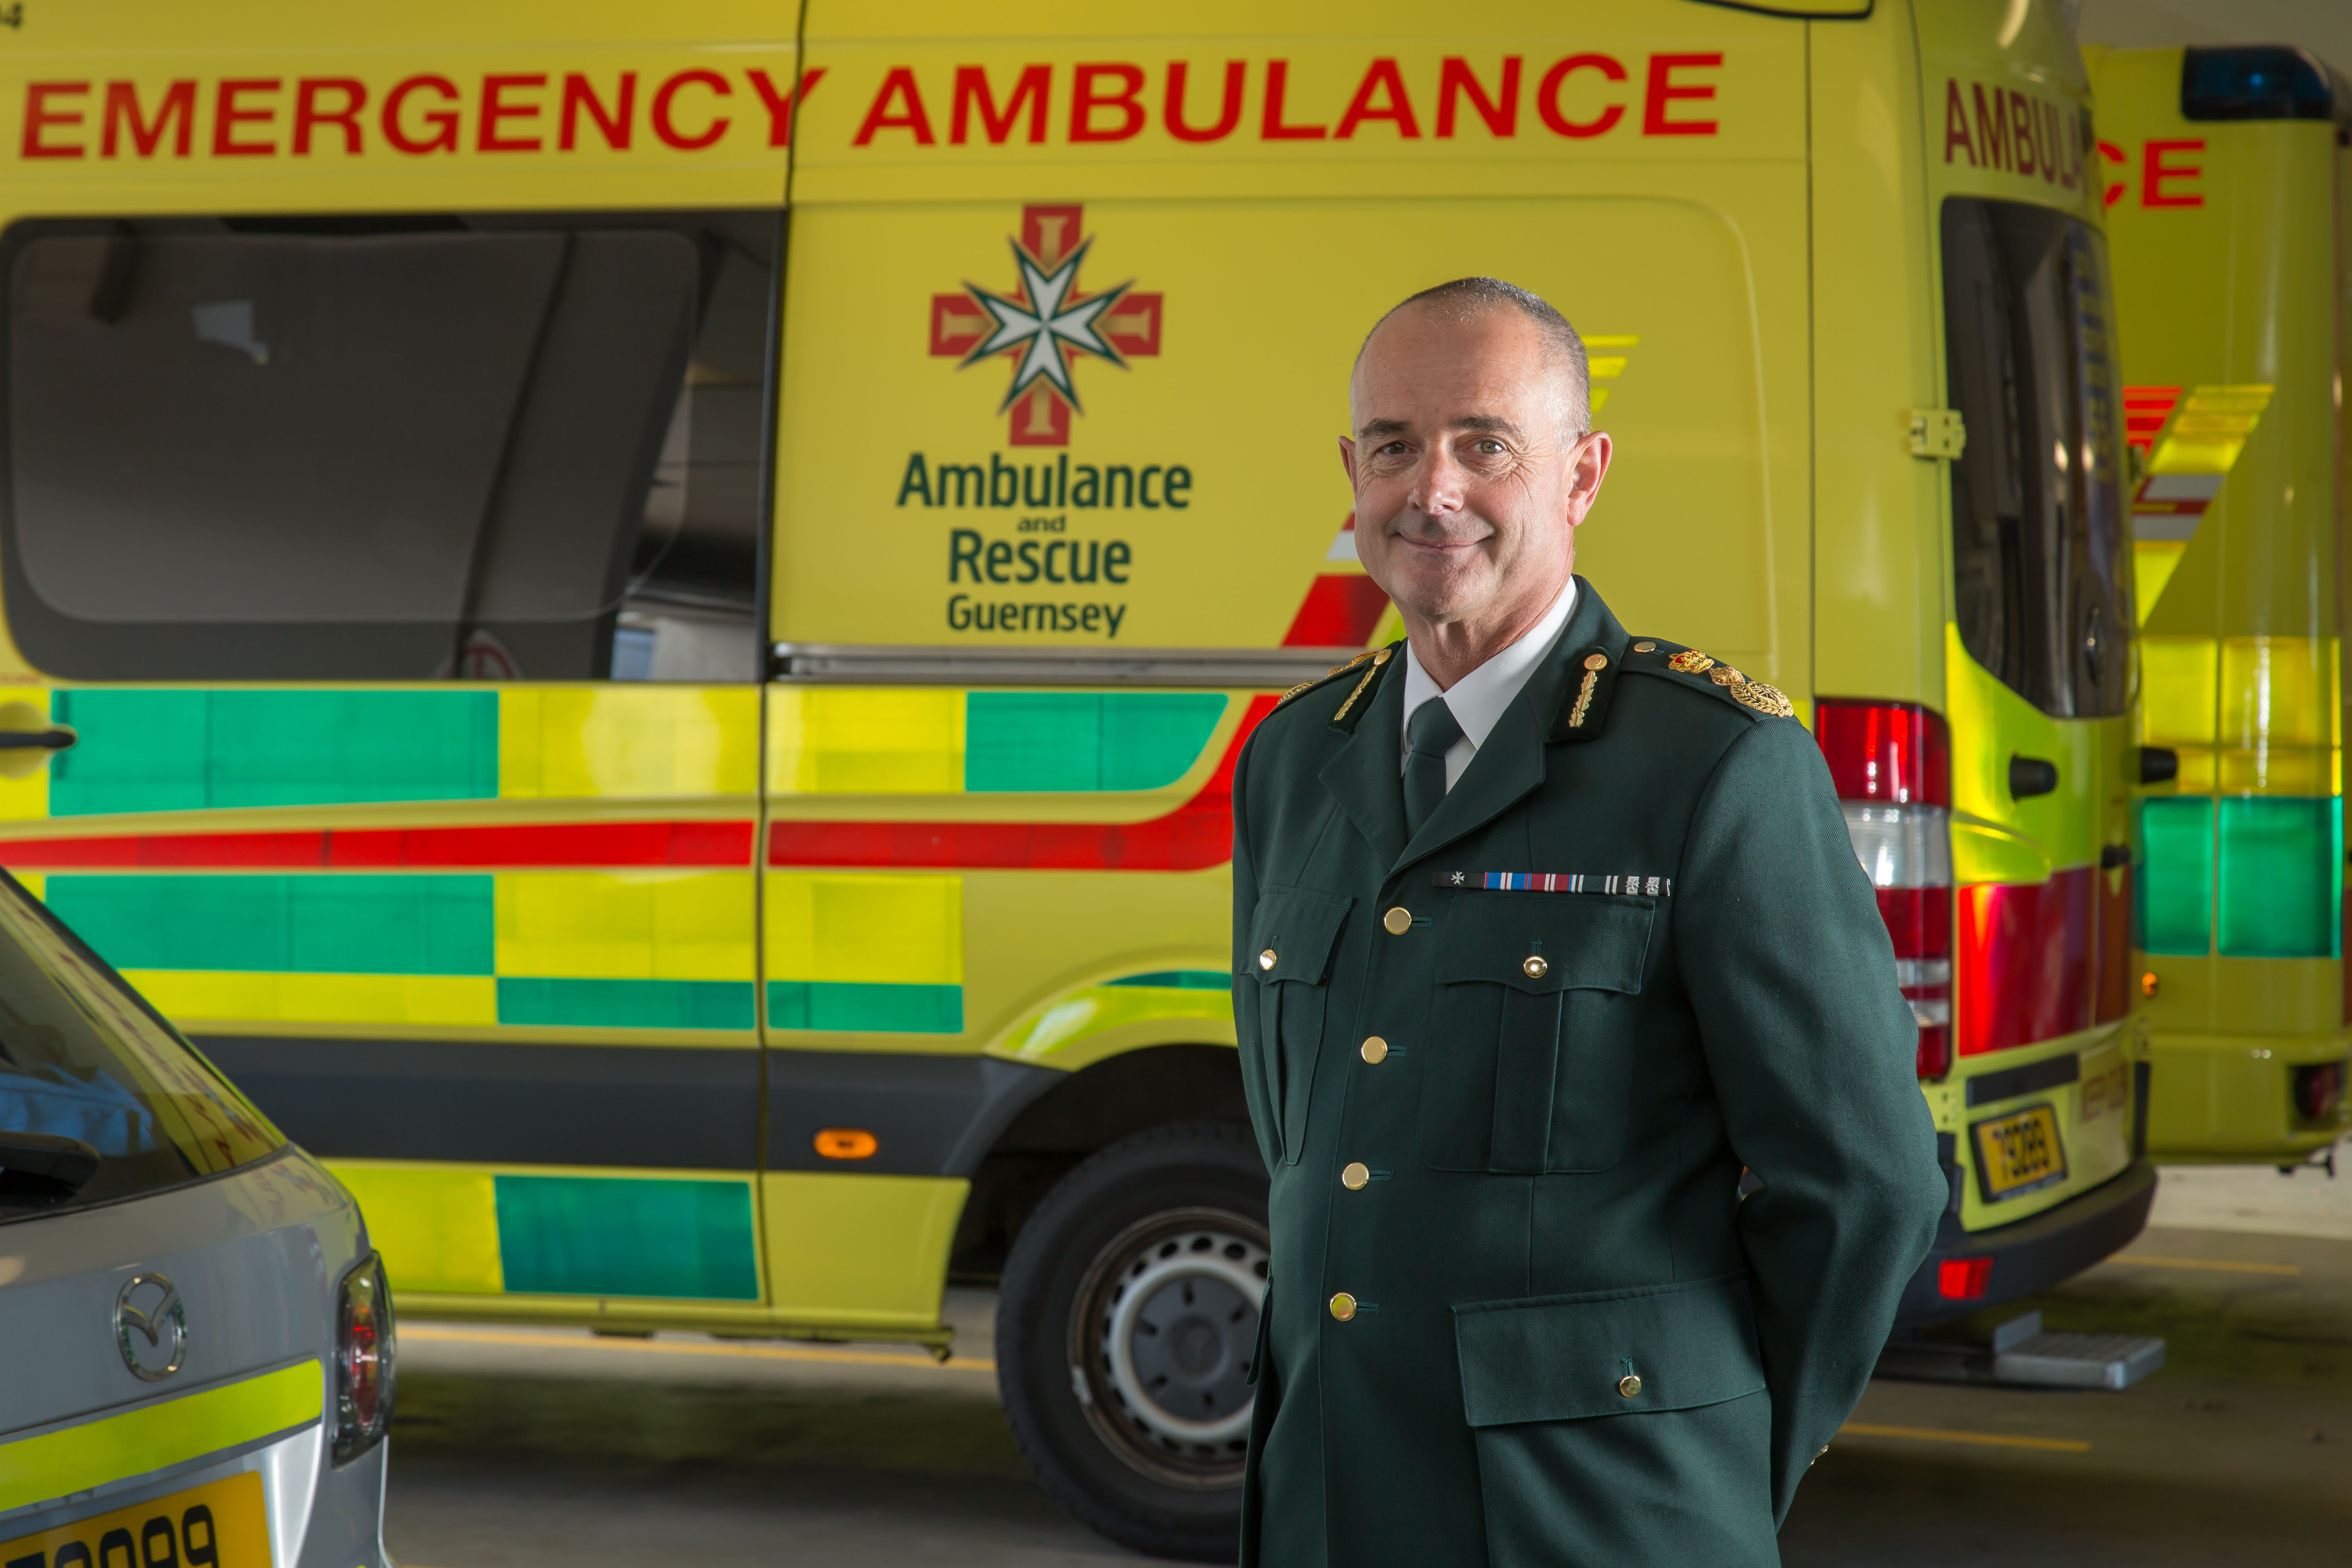 Jon Beausire - Chief Ambulance Ofiicer at St John Ambulance and Rescue